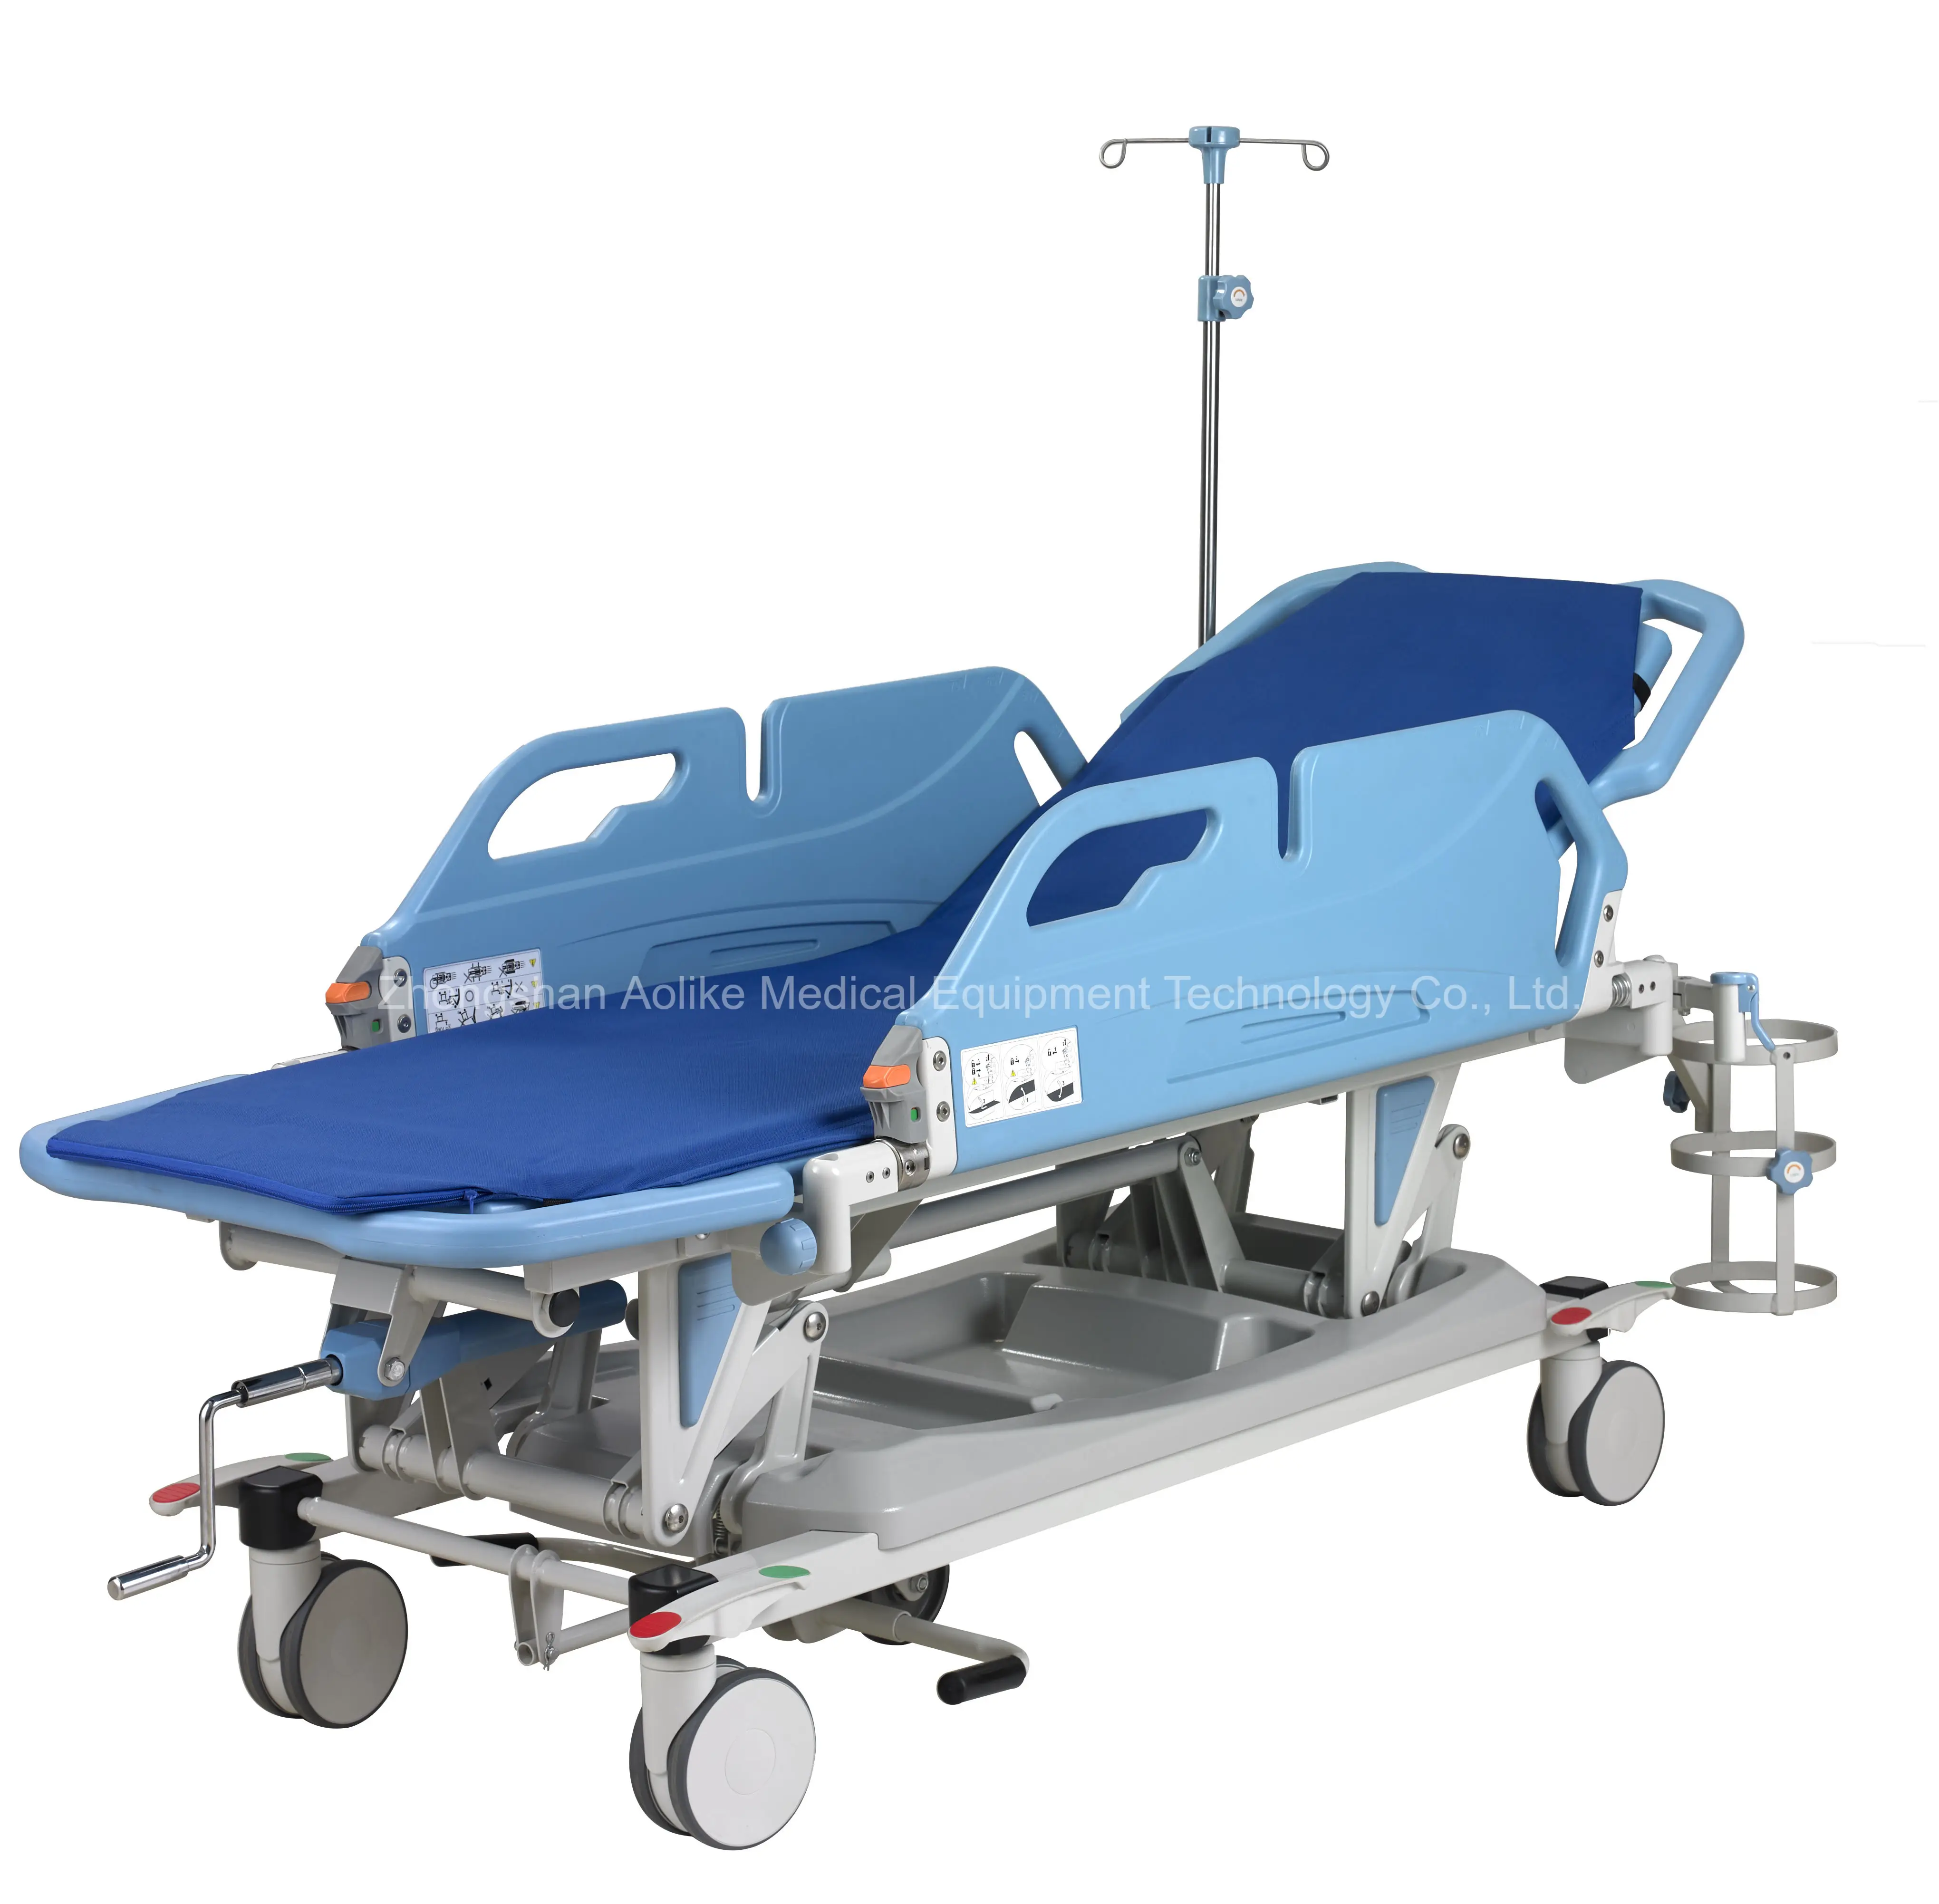 Maca de transferência manual de emergência móvel para transporte de pacientes hospitalares por atacado para hospital